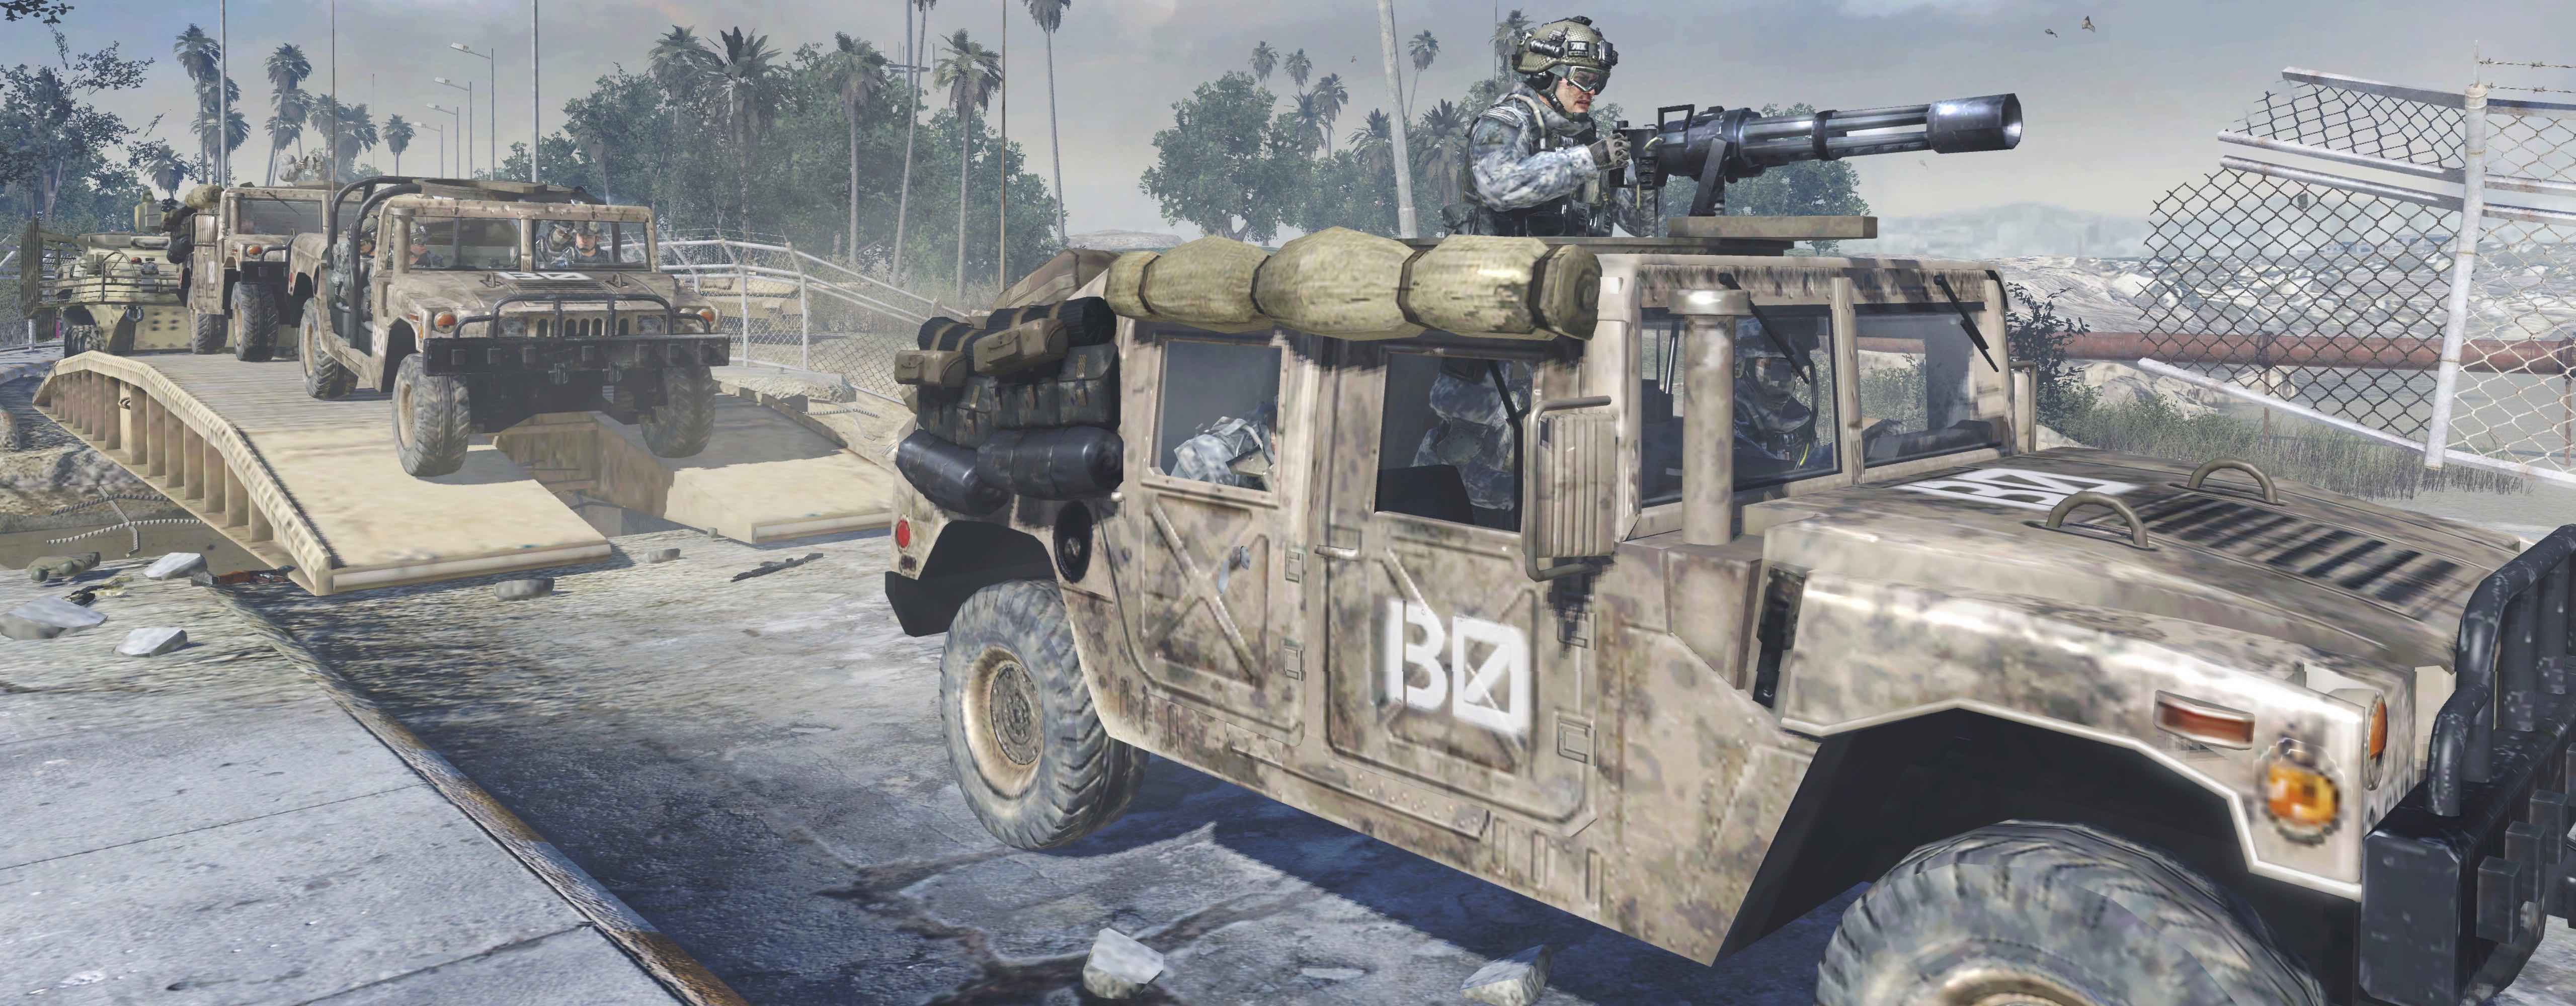 Activision sagt: Diese Klage gegen Call of Duty ist ein Angriff auf die Verfassung